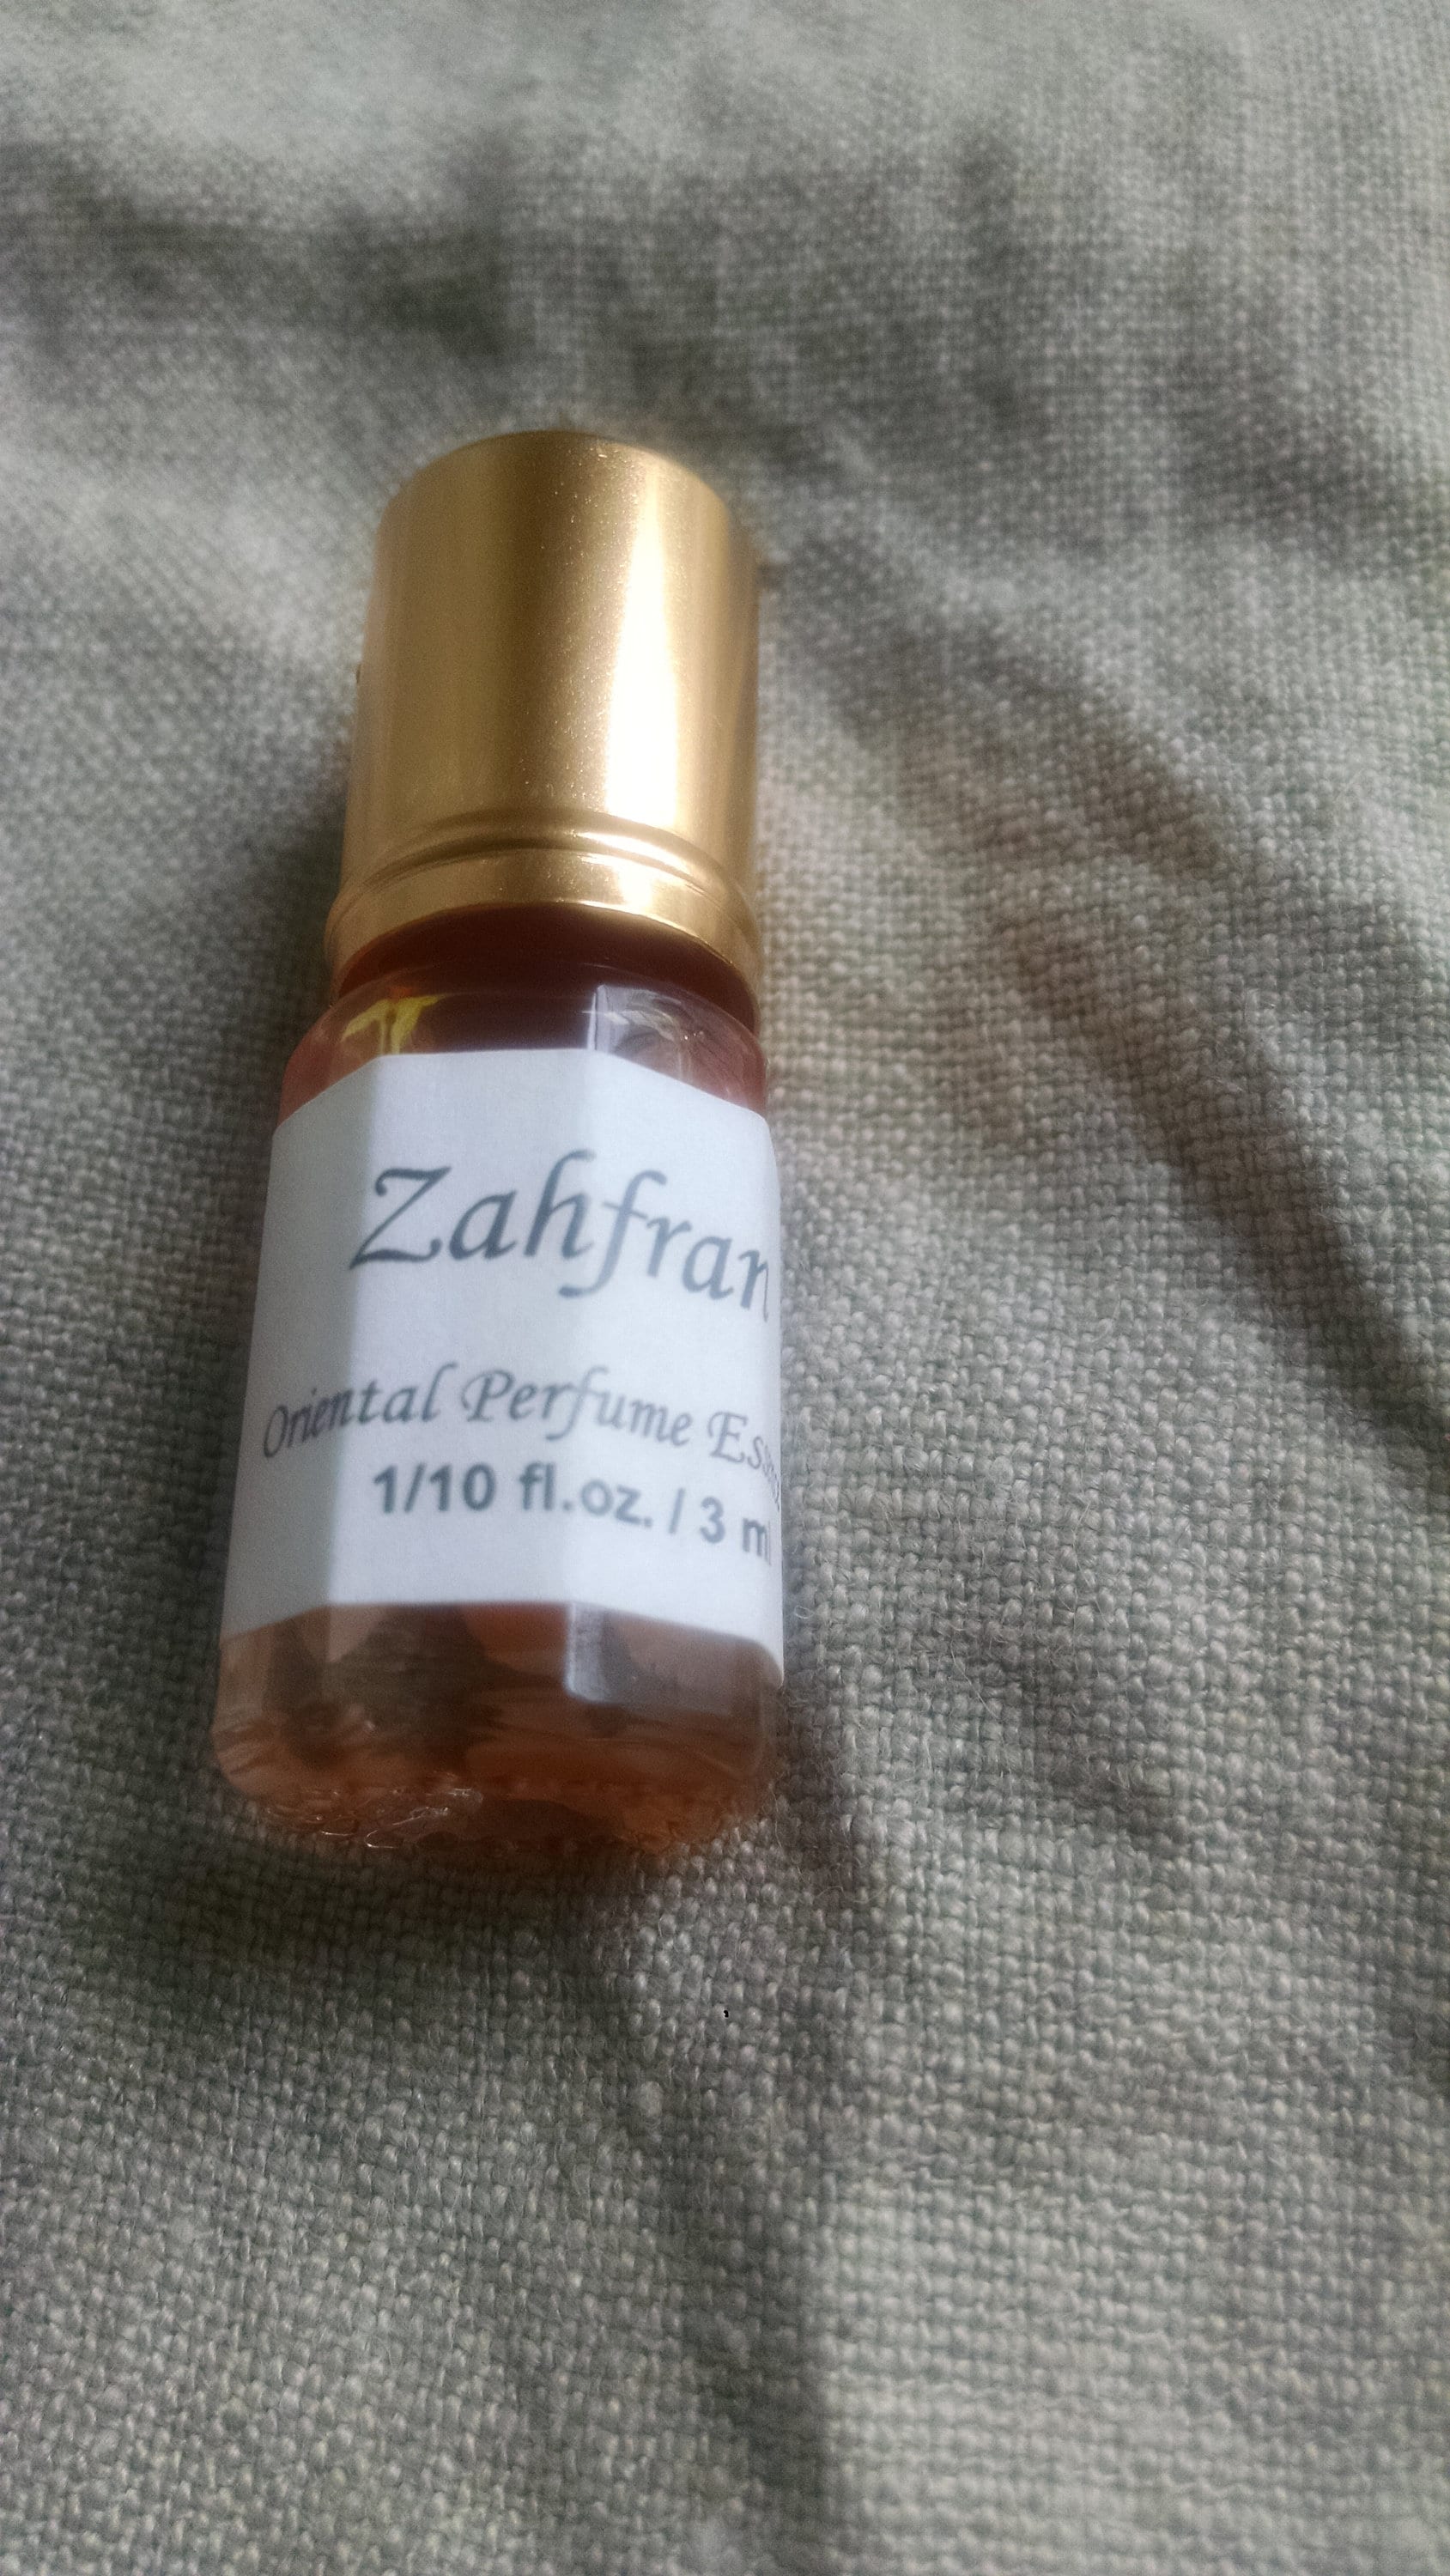 Madini Zahfran Perfume Oil Attar - Etsy.de